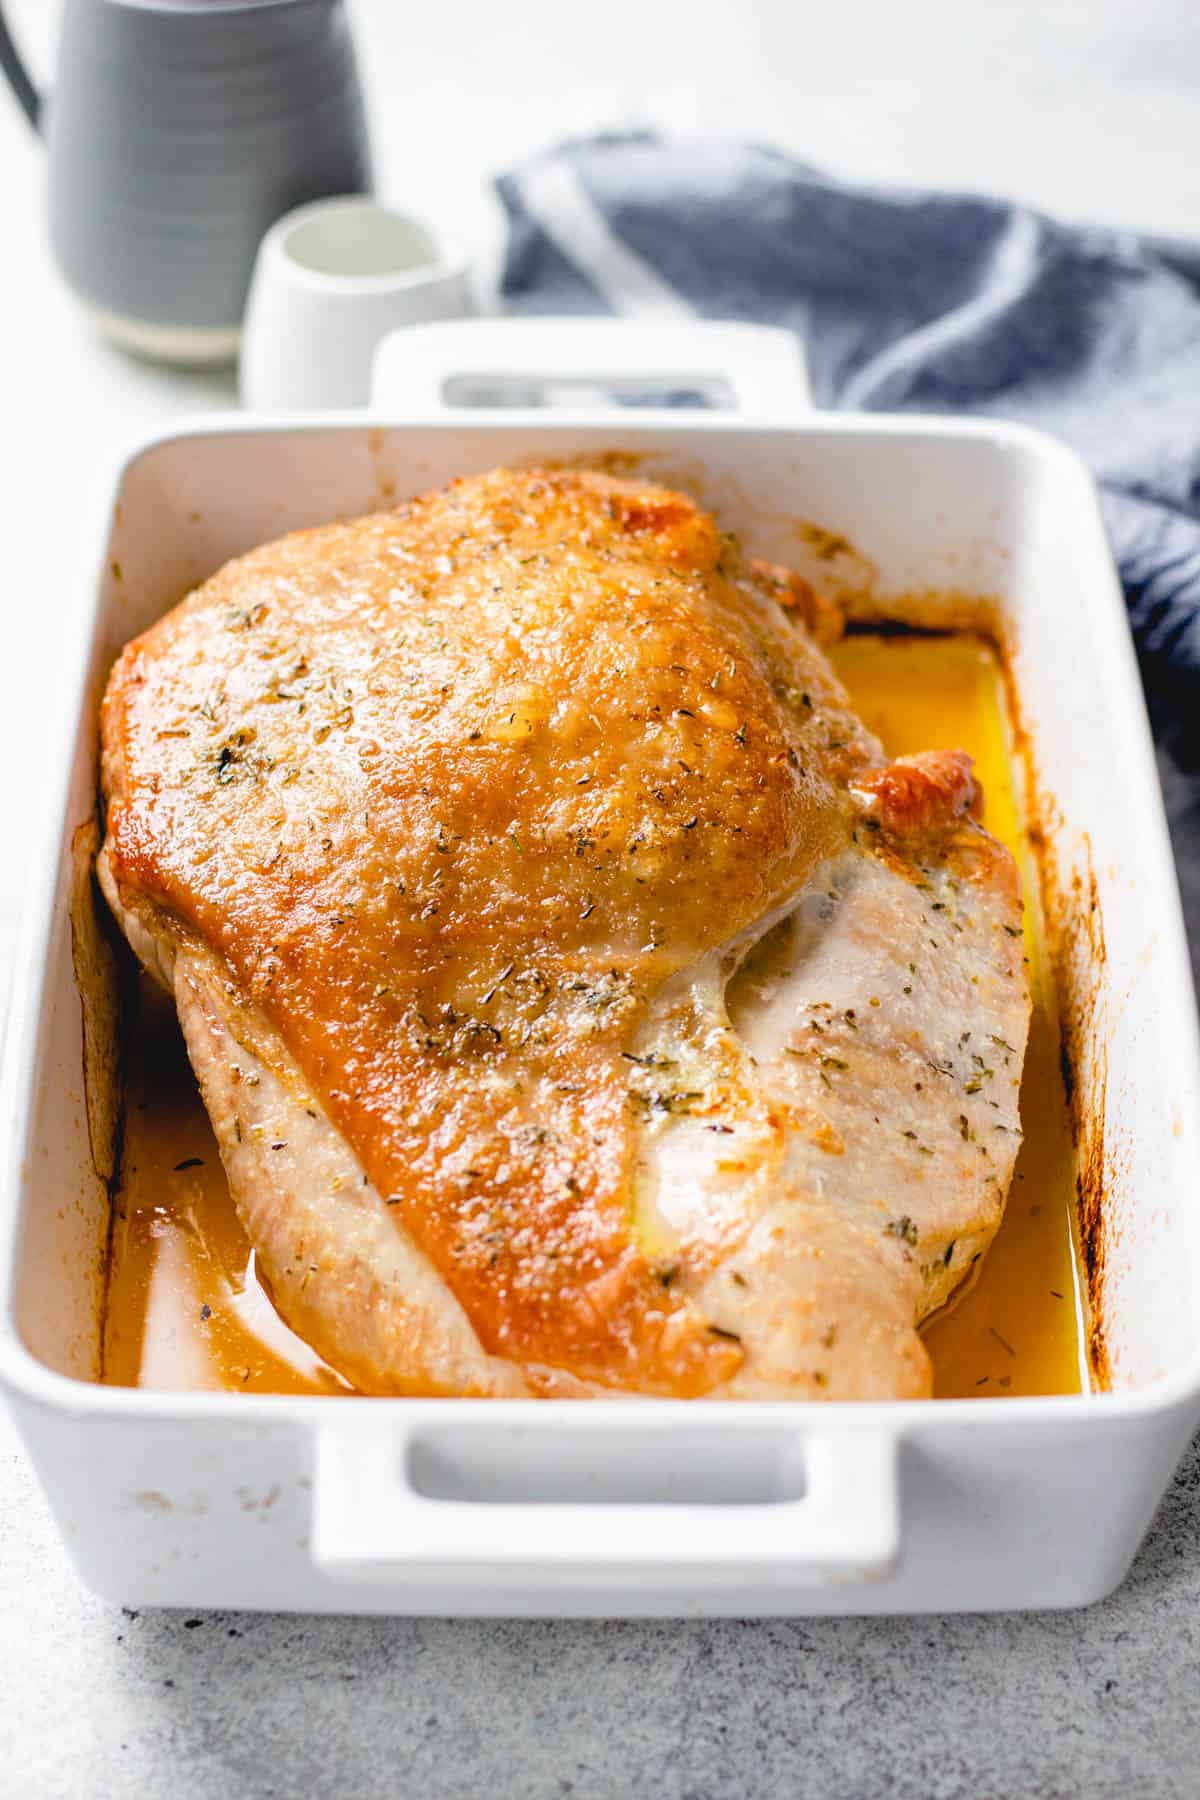 Roasted turkey breast in a baking pan.